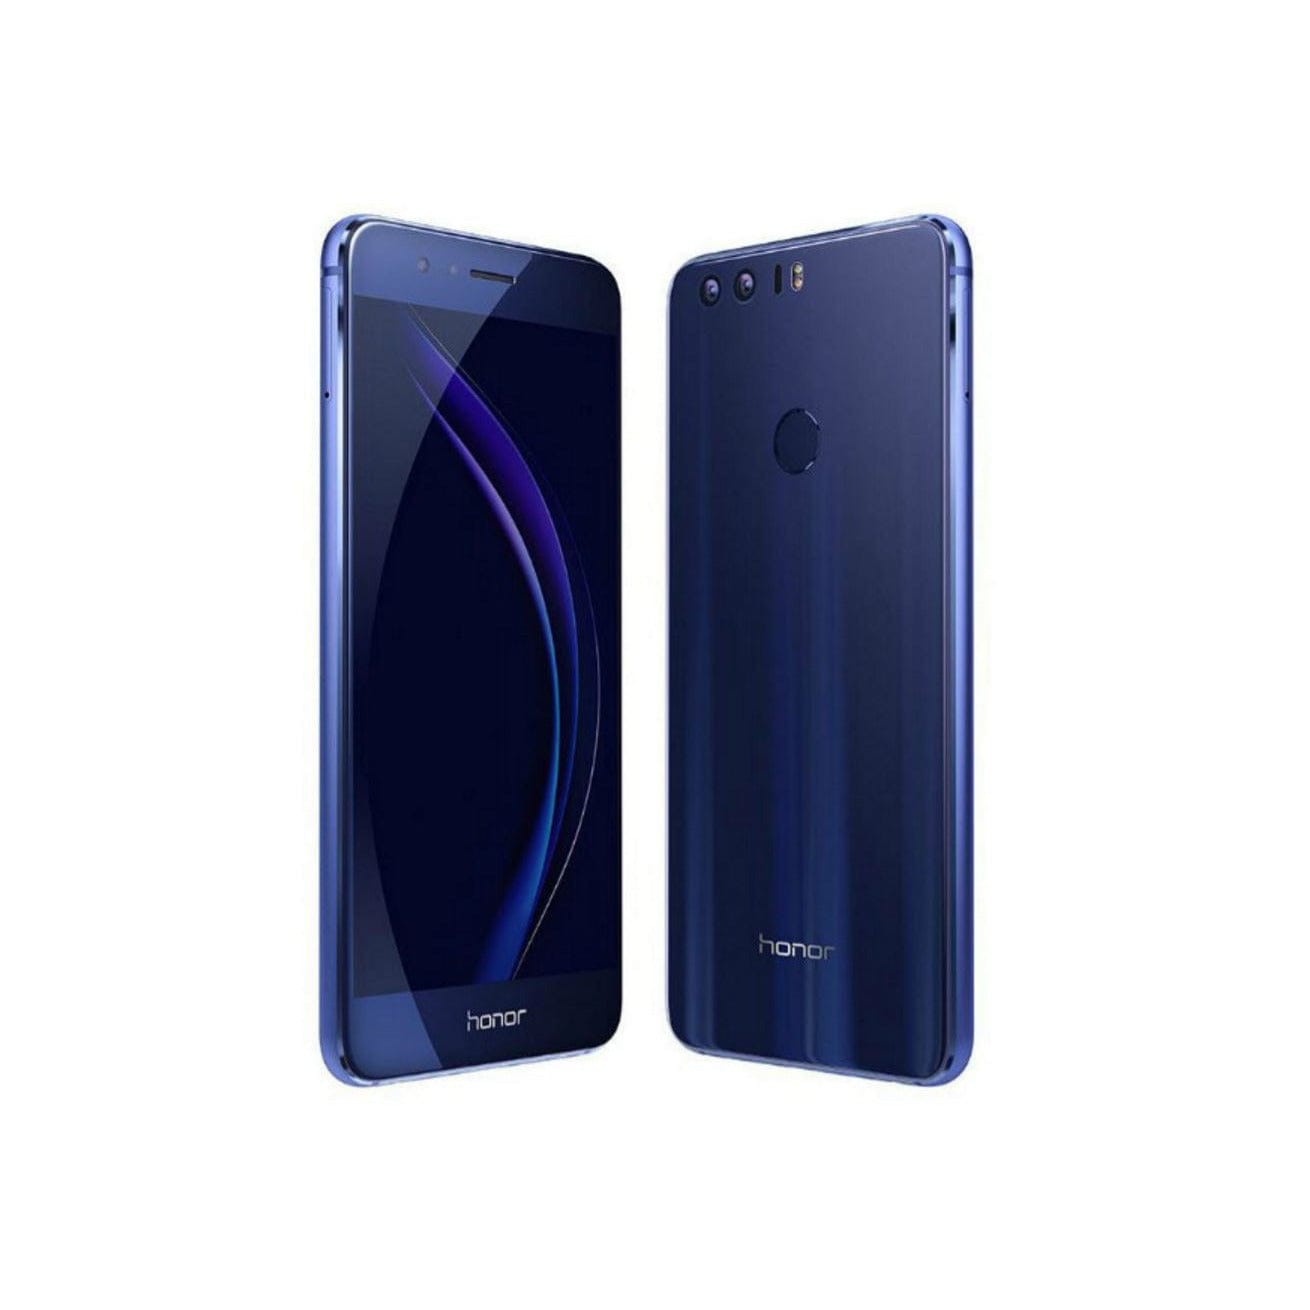 Huawei Honor 8 - Dual-Sim - 32 GB - Sapphire Blue - Unlocked - G